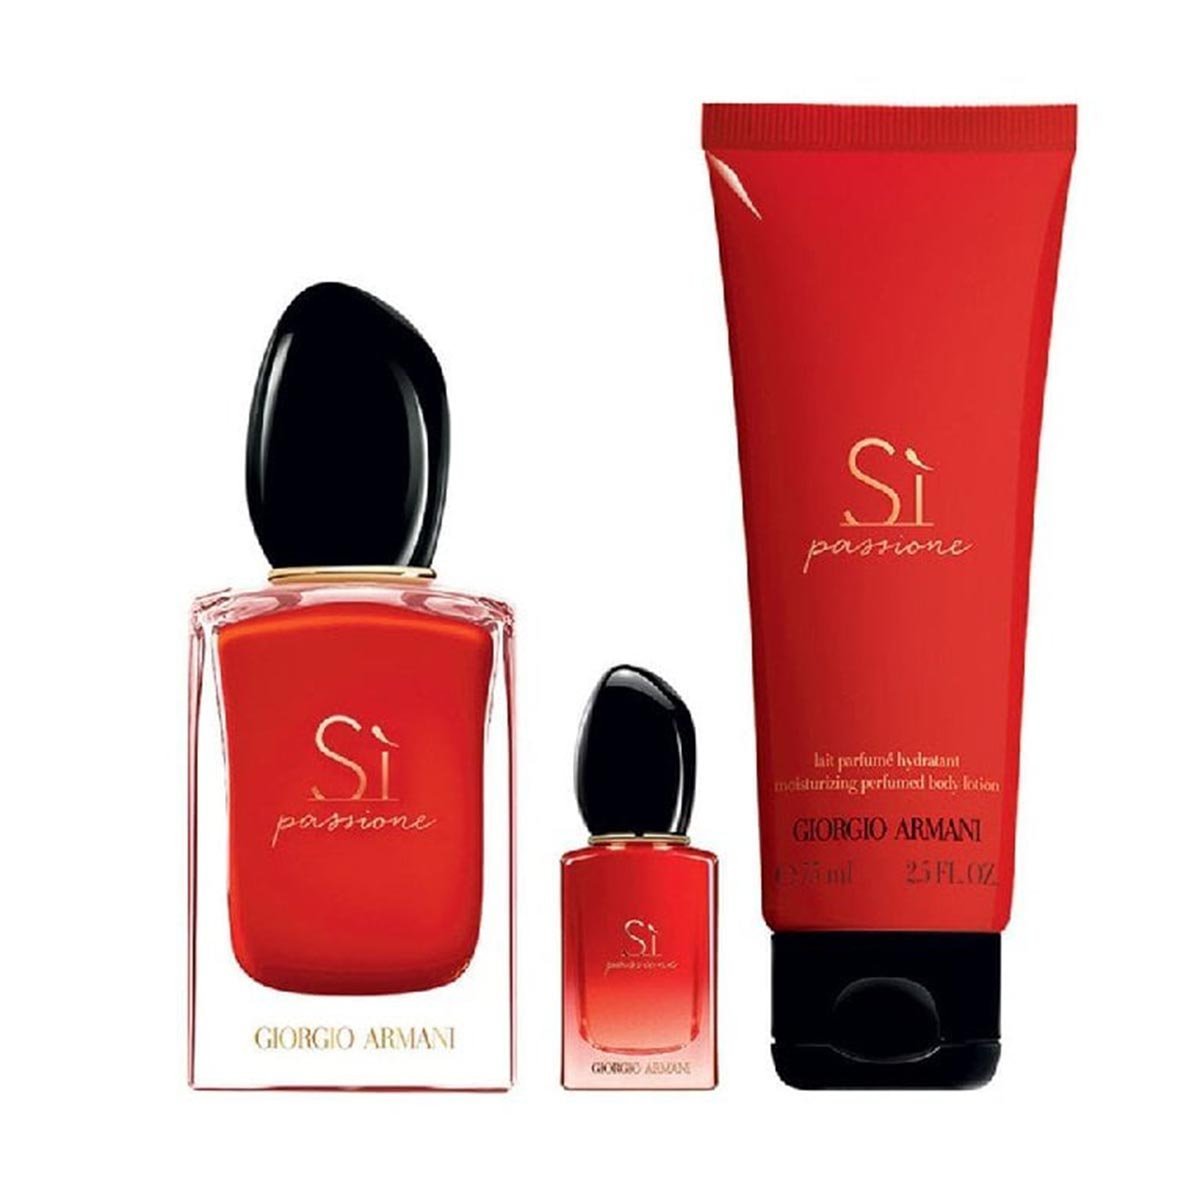 Giorgio Armani Si Passione Deluxe Gift Set - My Perfume Shop Australia